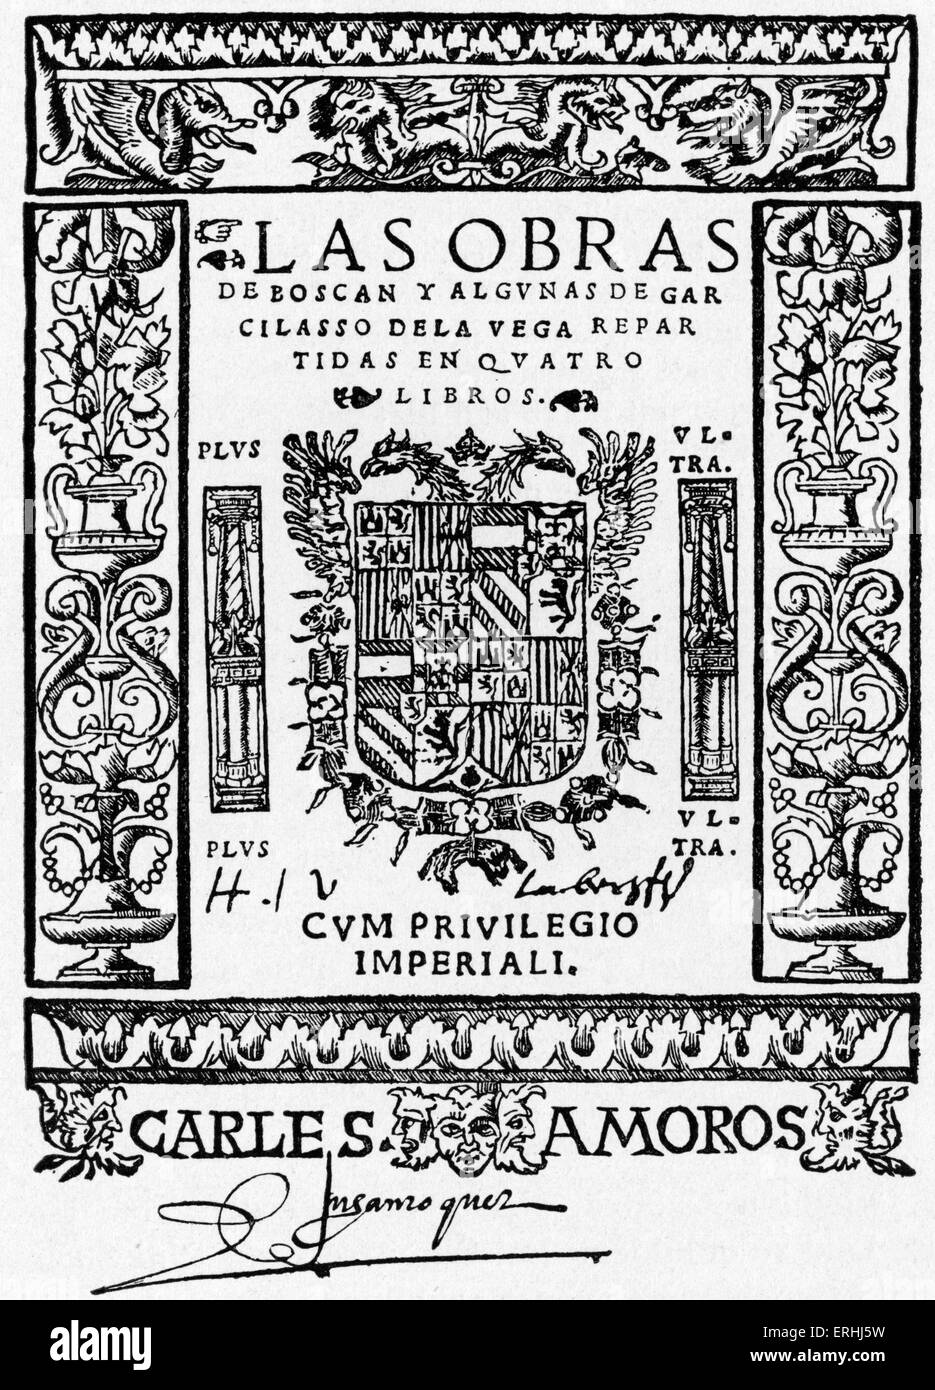 Juan Boscan Almogaver e Garcilaso de la Vega - Pagina del titolo della prima edizione dei poeti spagnoli' funziona. 1490 - 1542. Con Foto Stock